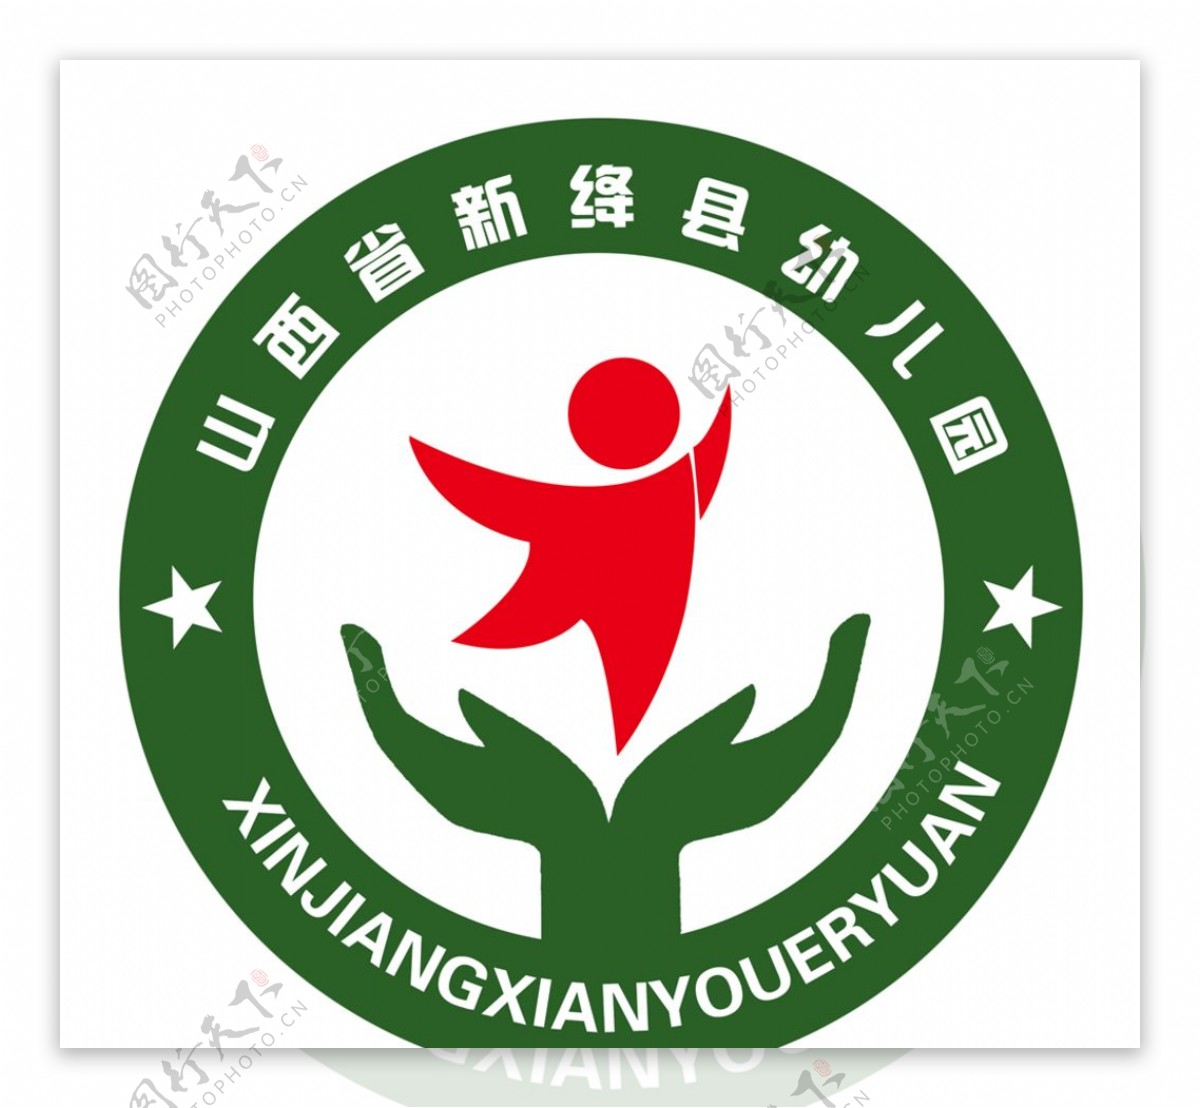 新绛县幼儿园标志